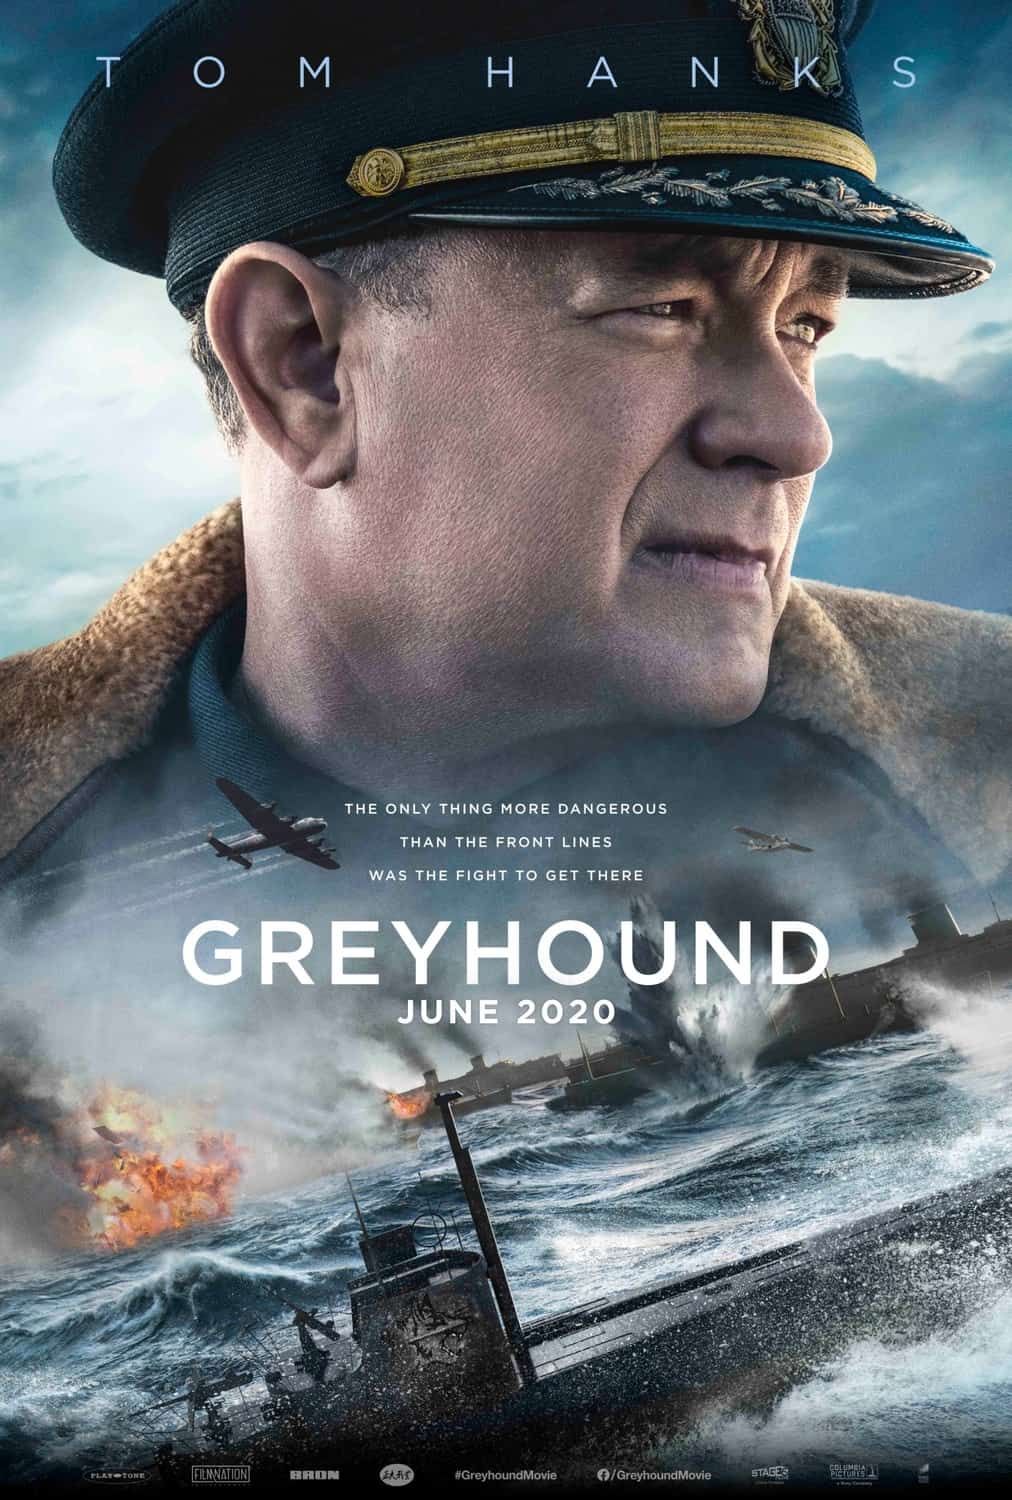 Tom Hanks als Kapitän im Film Greyhound.